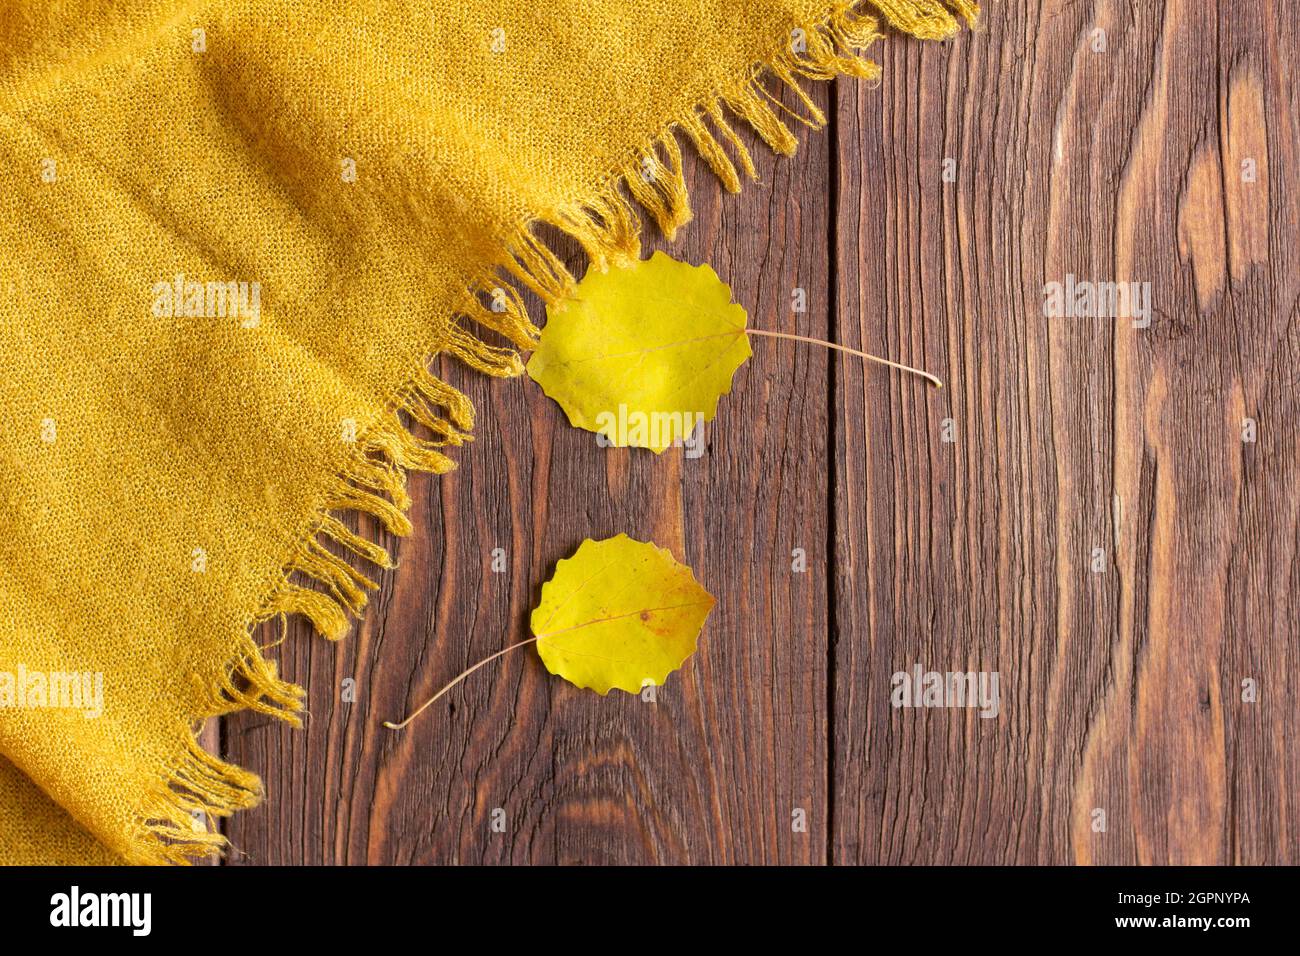 Das Konzept des Herbstes.Ein Schal aus Senf oder gelber Farbe und  vergilbten Blättern auf einem dunklen Holzhintergrund Stockfotografie -  Alamy